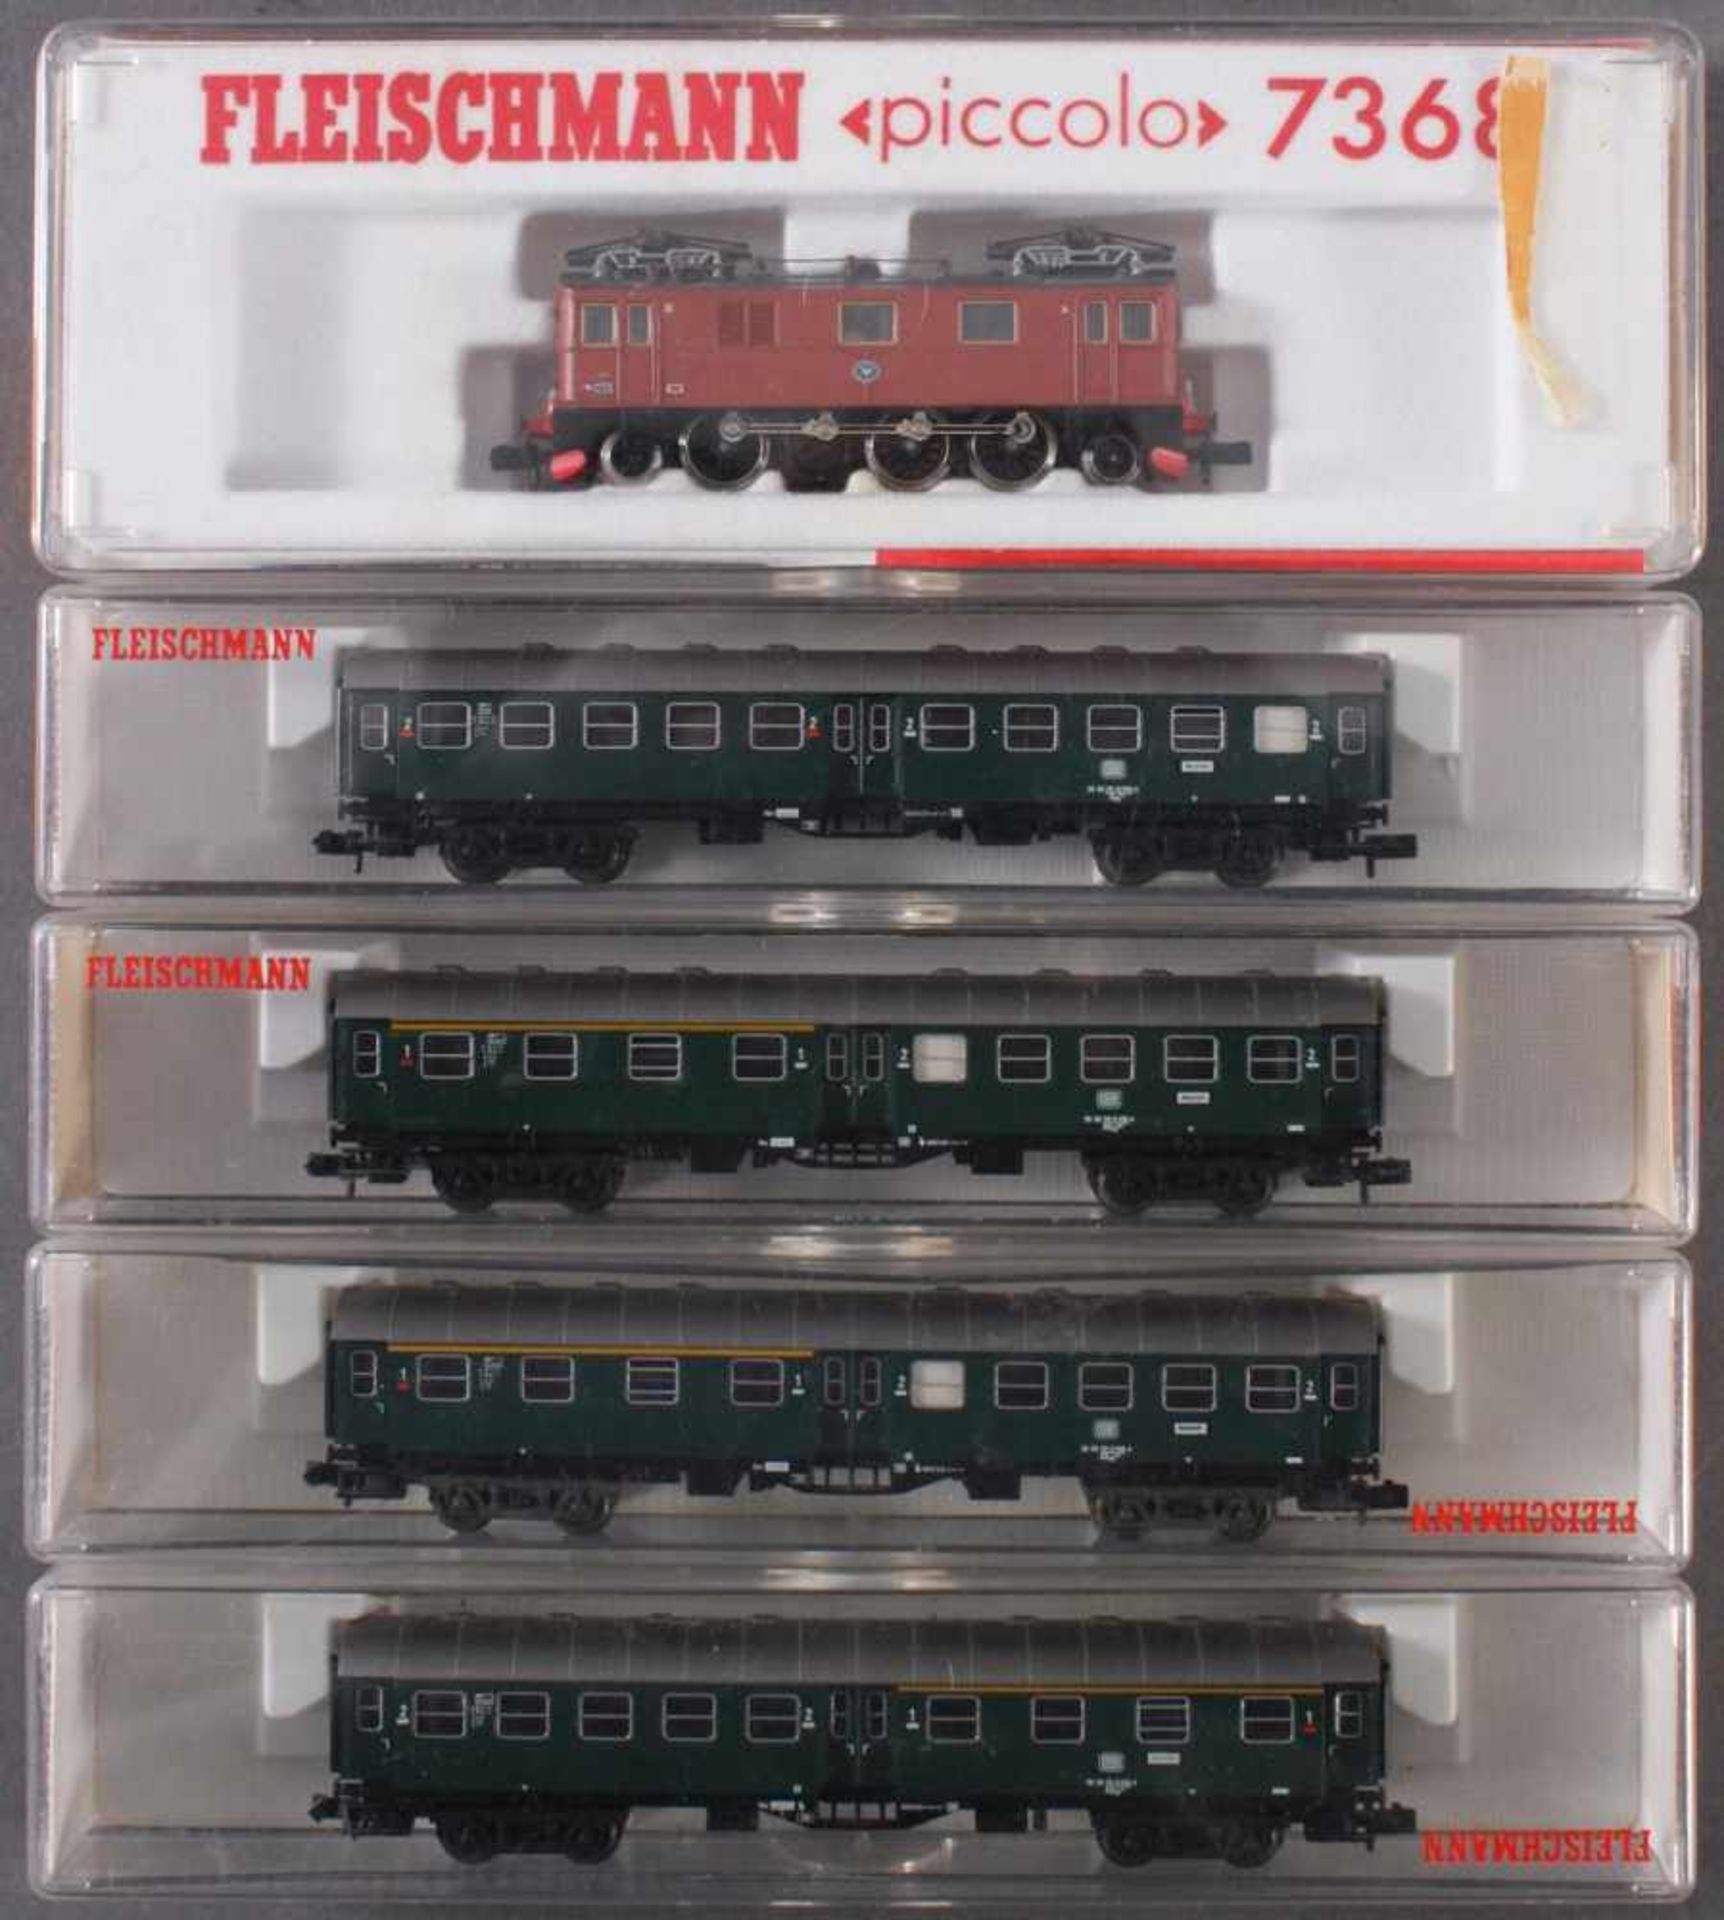 Fleischmann E-Lok Piccolo 7368 mit 4 PersonenwaggonsModellnummer der Waggons, 8129, 8127 und 2x